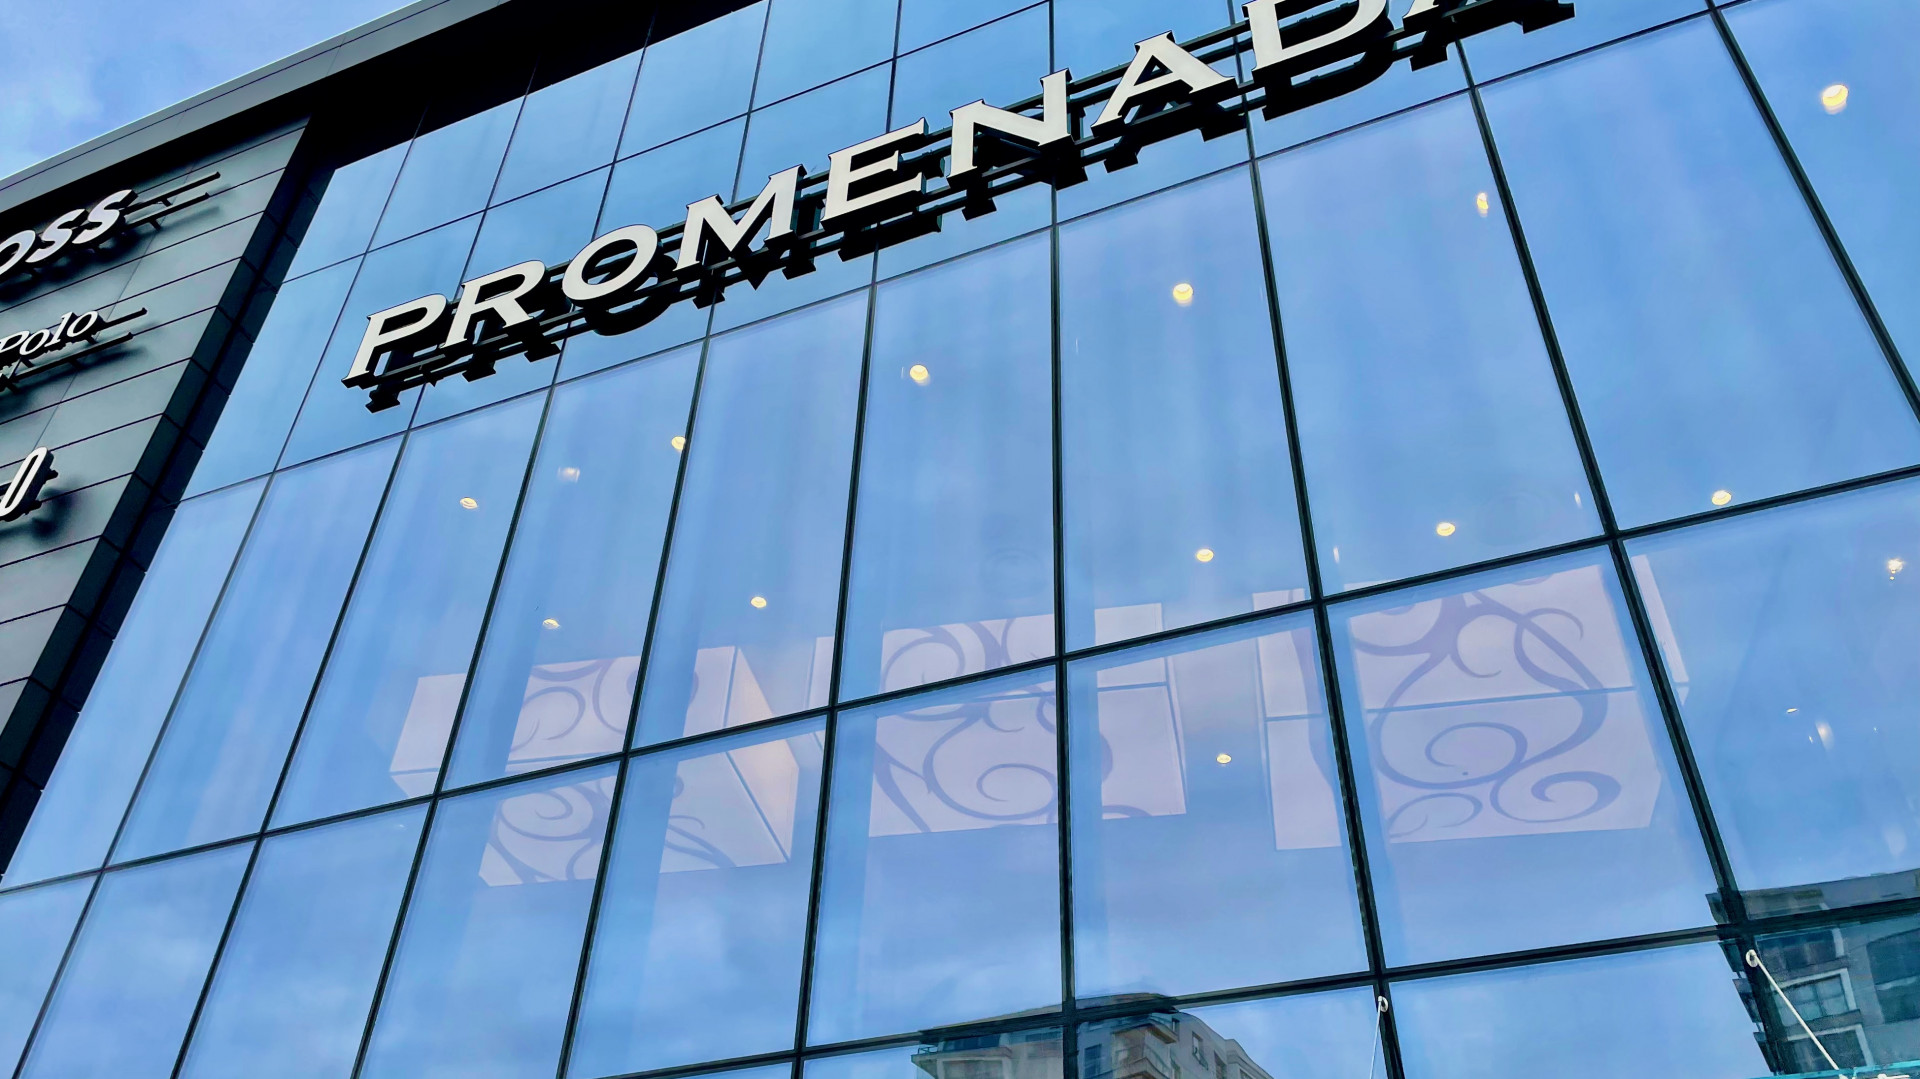 Zakończyła się przebudowa centrum handlowego Promenada w Warszawie. Na klientów czeka 50 nowych sklepów, w tym Peek & Cloppenburg, Marc O'Polo, Tezenis, Benetton czy Homla.